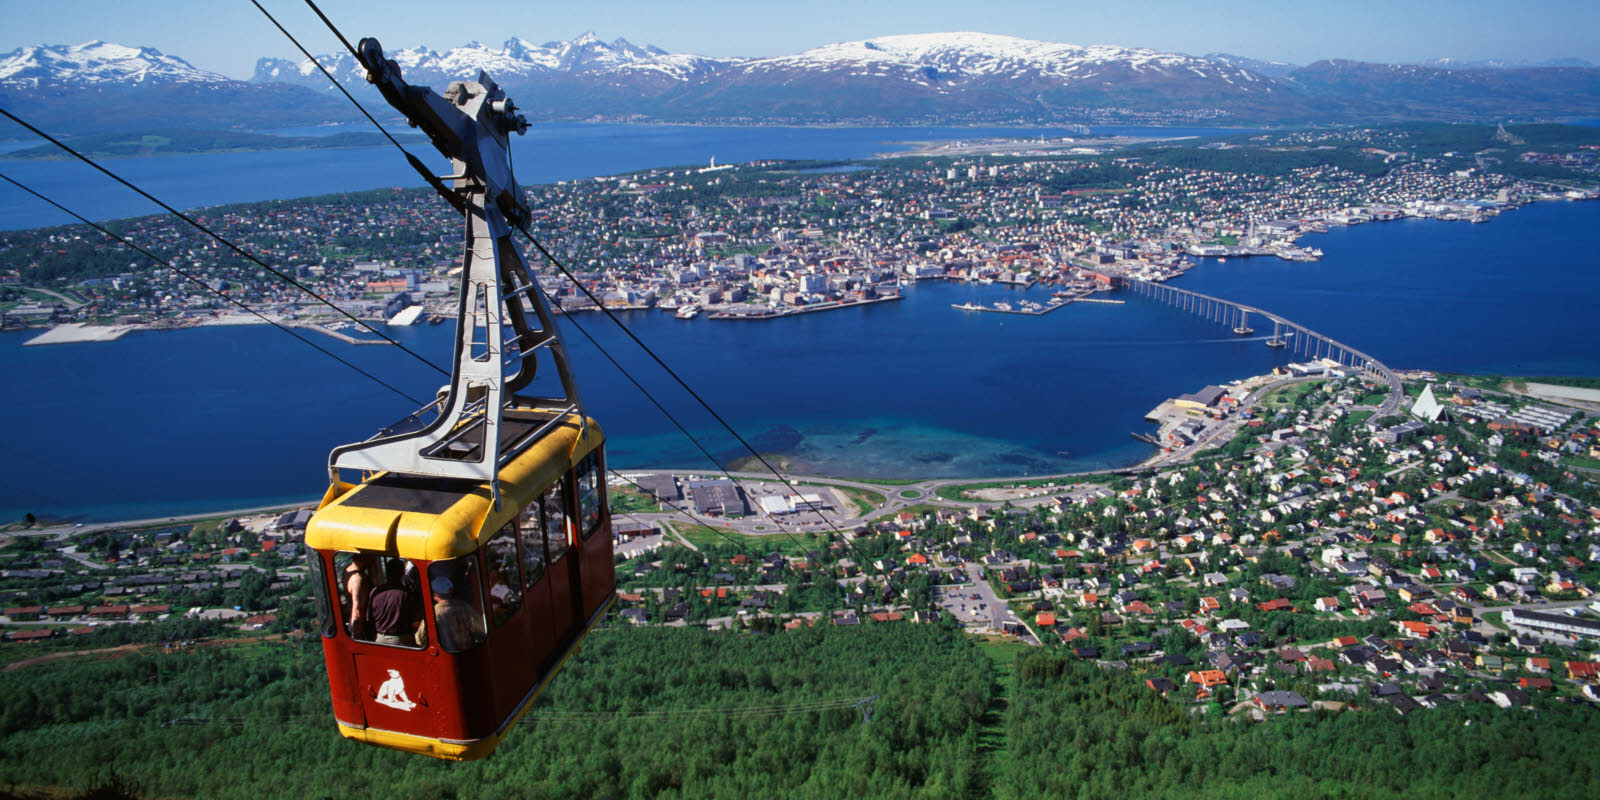 The Tromsø Cable Car in Tromsø